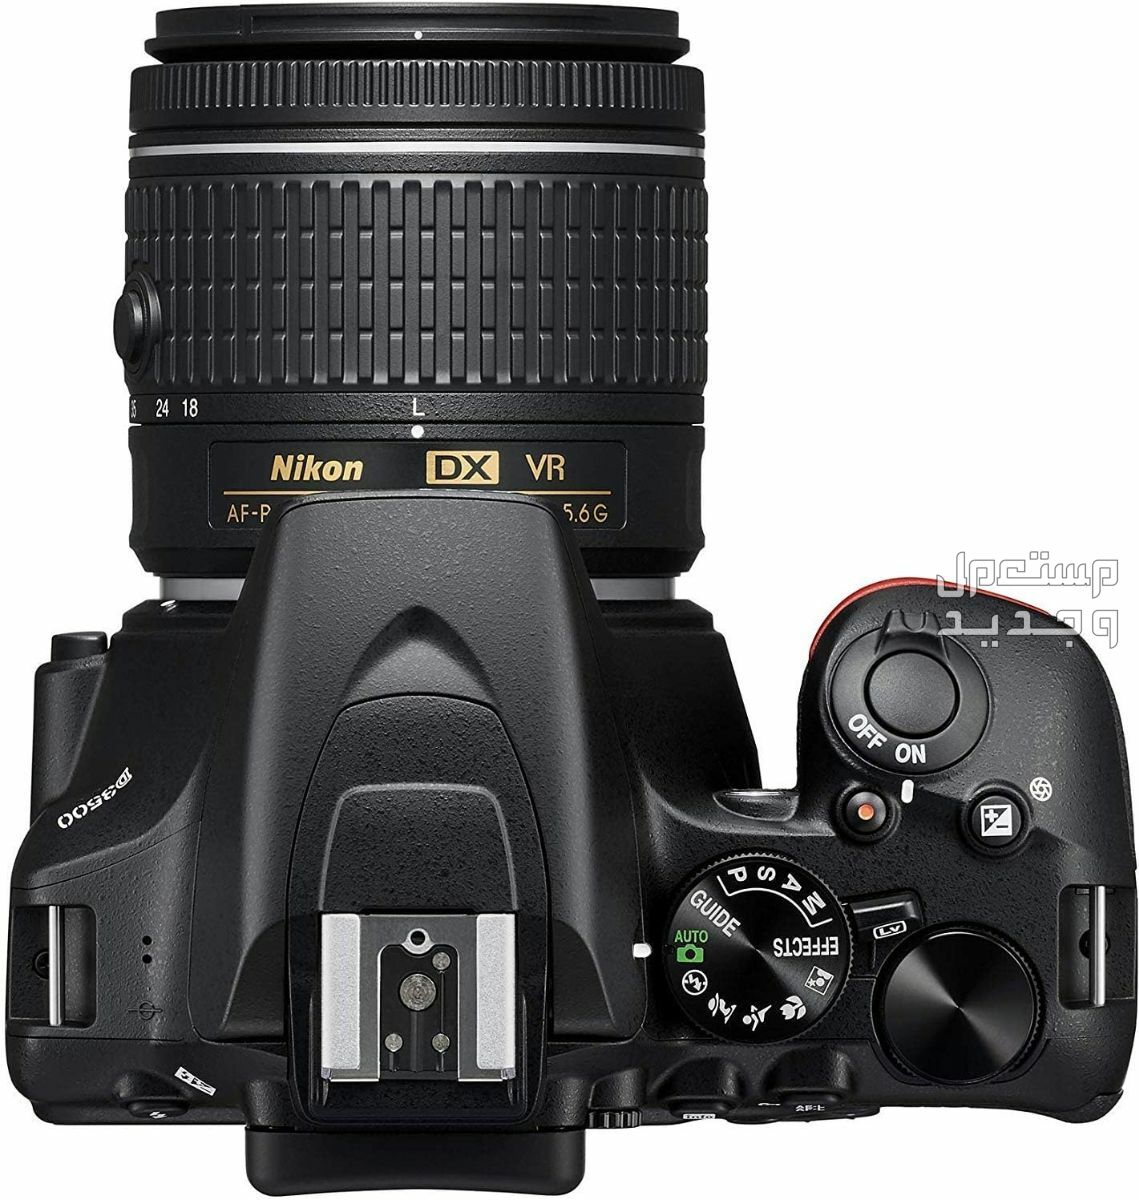 10 كاميرات تصوير ماركات عالمية بأسعار رخيصة في الجزائر سعر كاميرا Nikon D3500